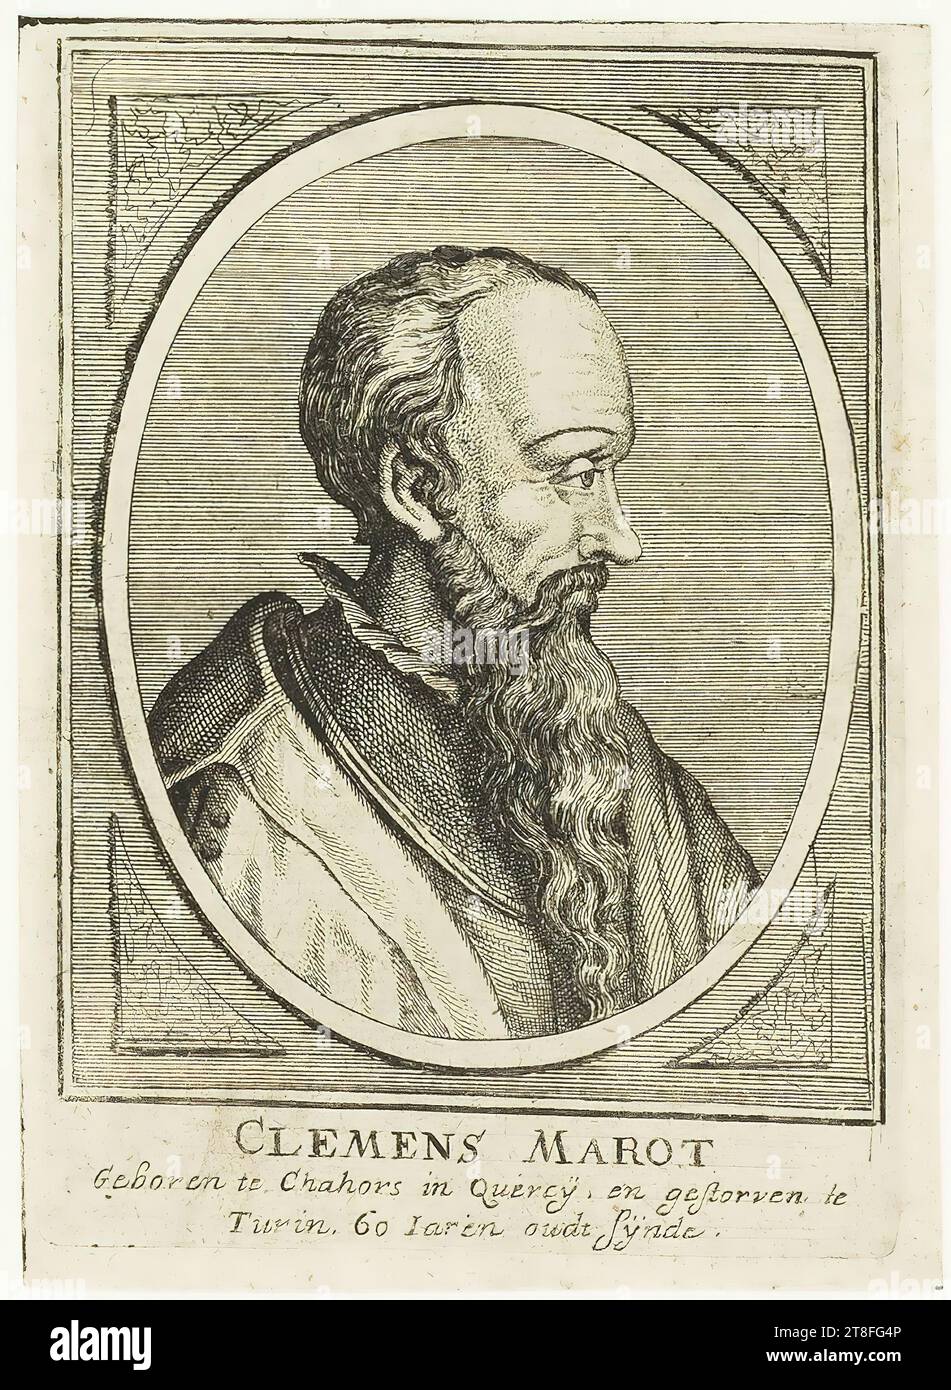 CLEMENS MAROT, nato a Chahors in Quercÿ, e morto a Torino. 60 Iaren vecchio sÿnde Foto Stock